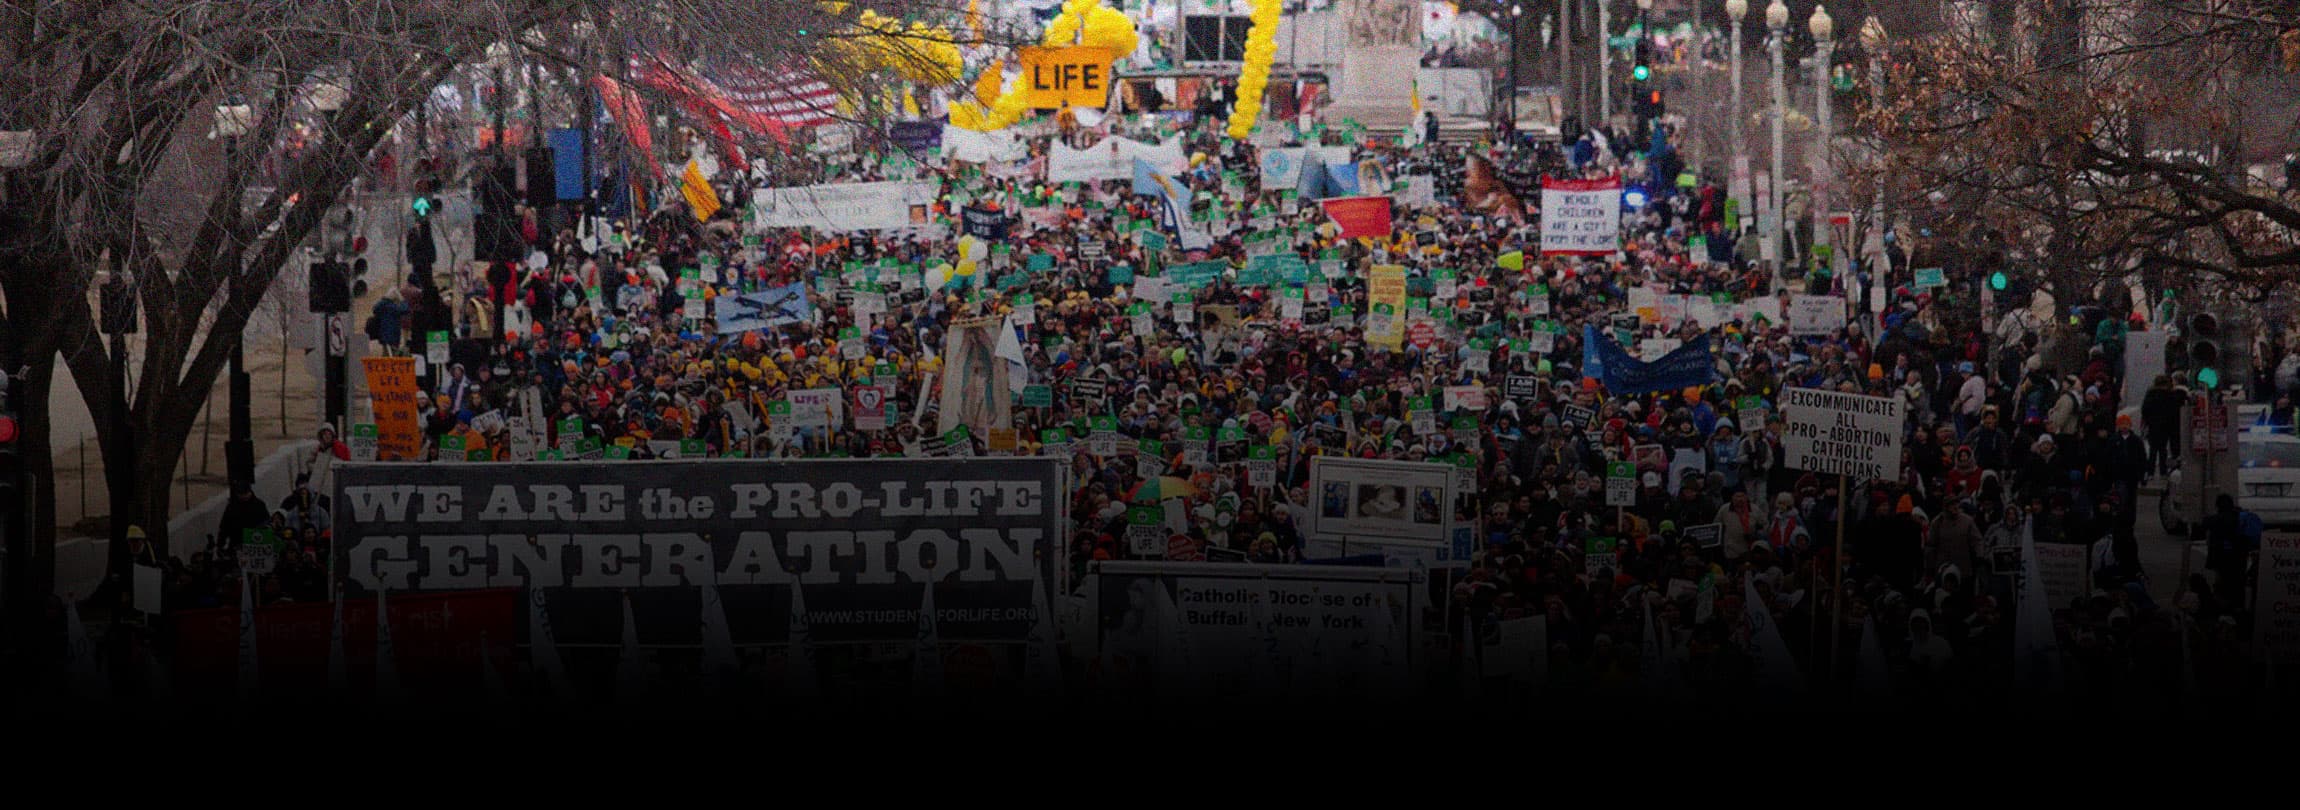 A maior "Marcha pela Vida" da história dos EUA